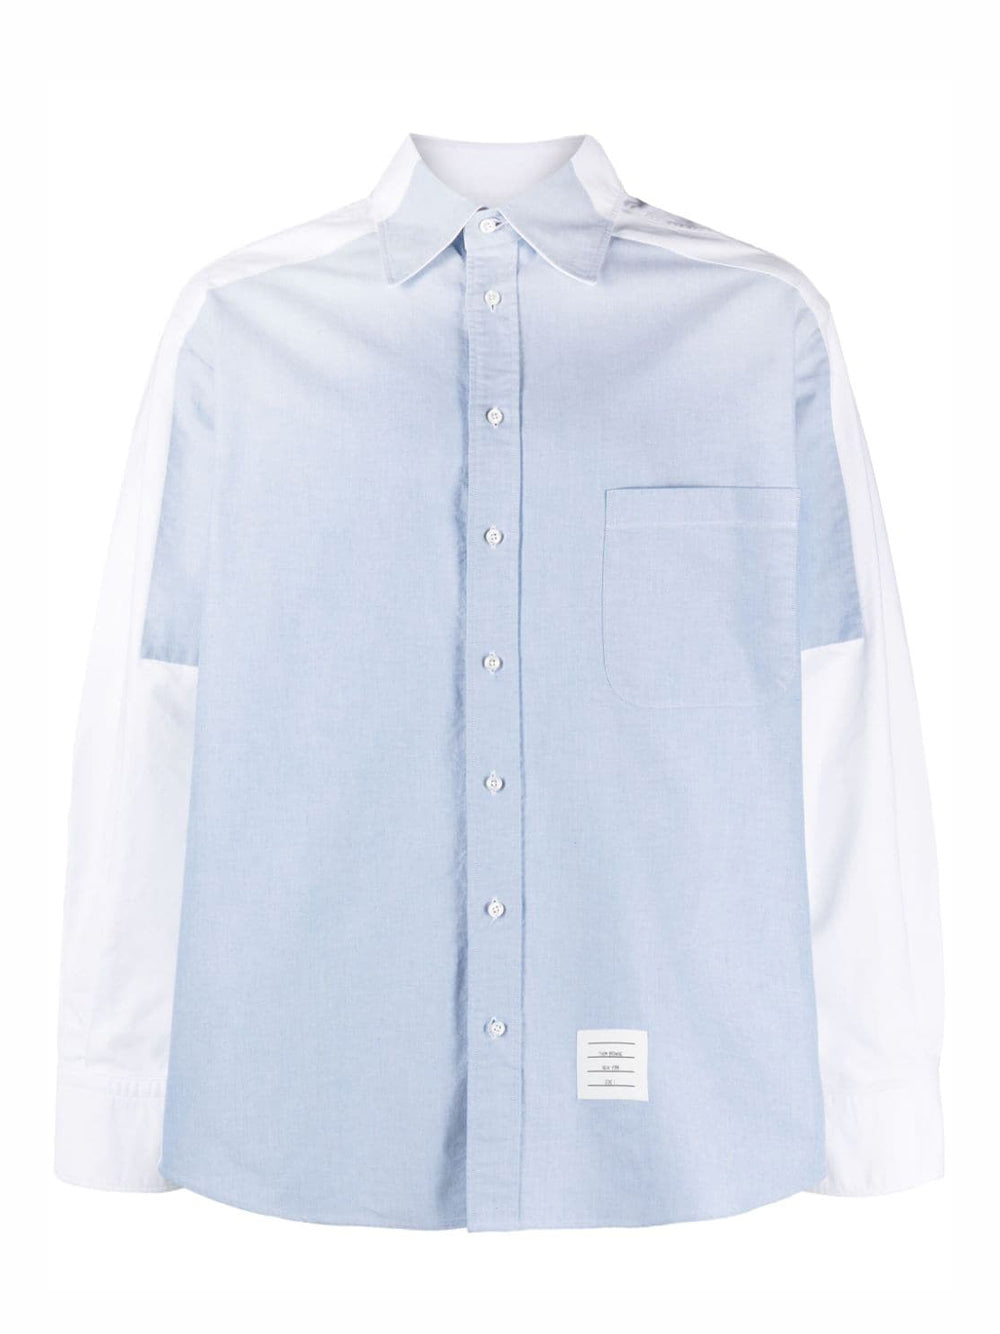 Oversized Long Sleeve Shirt W/Halo (Oxford White)